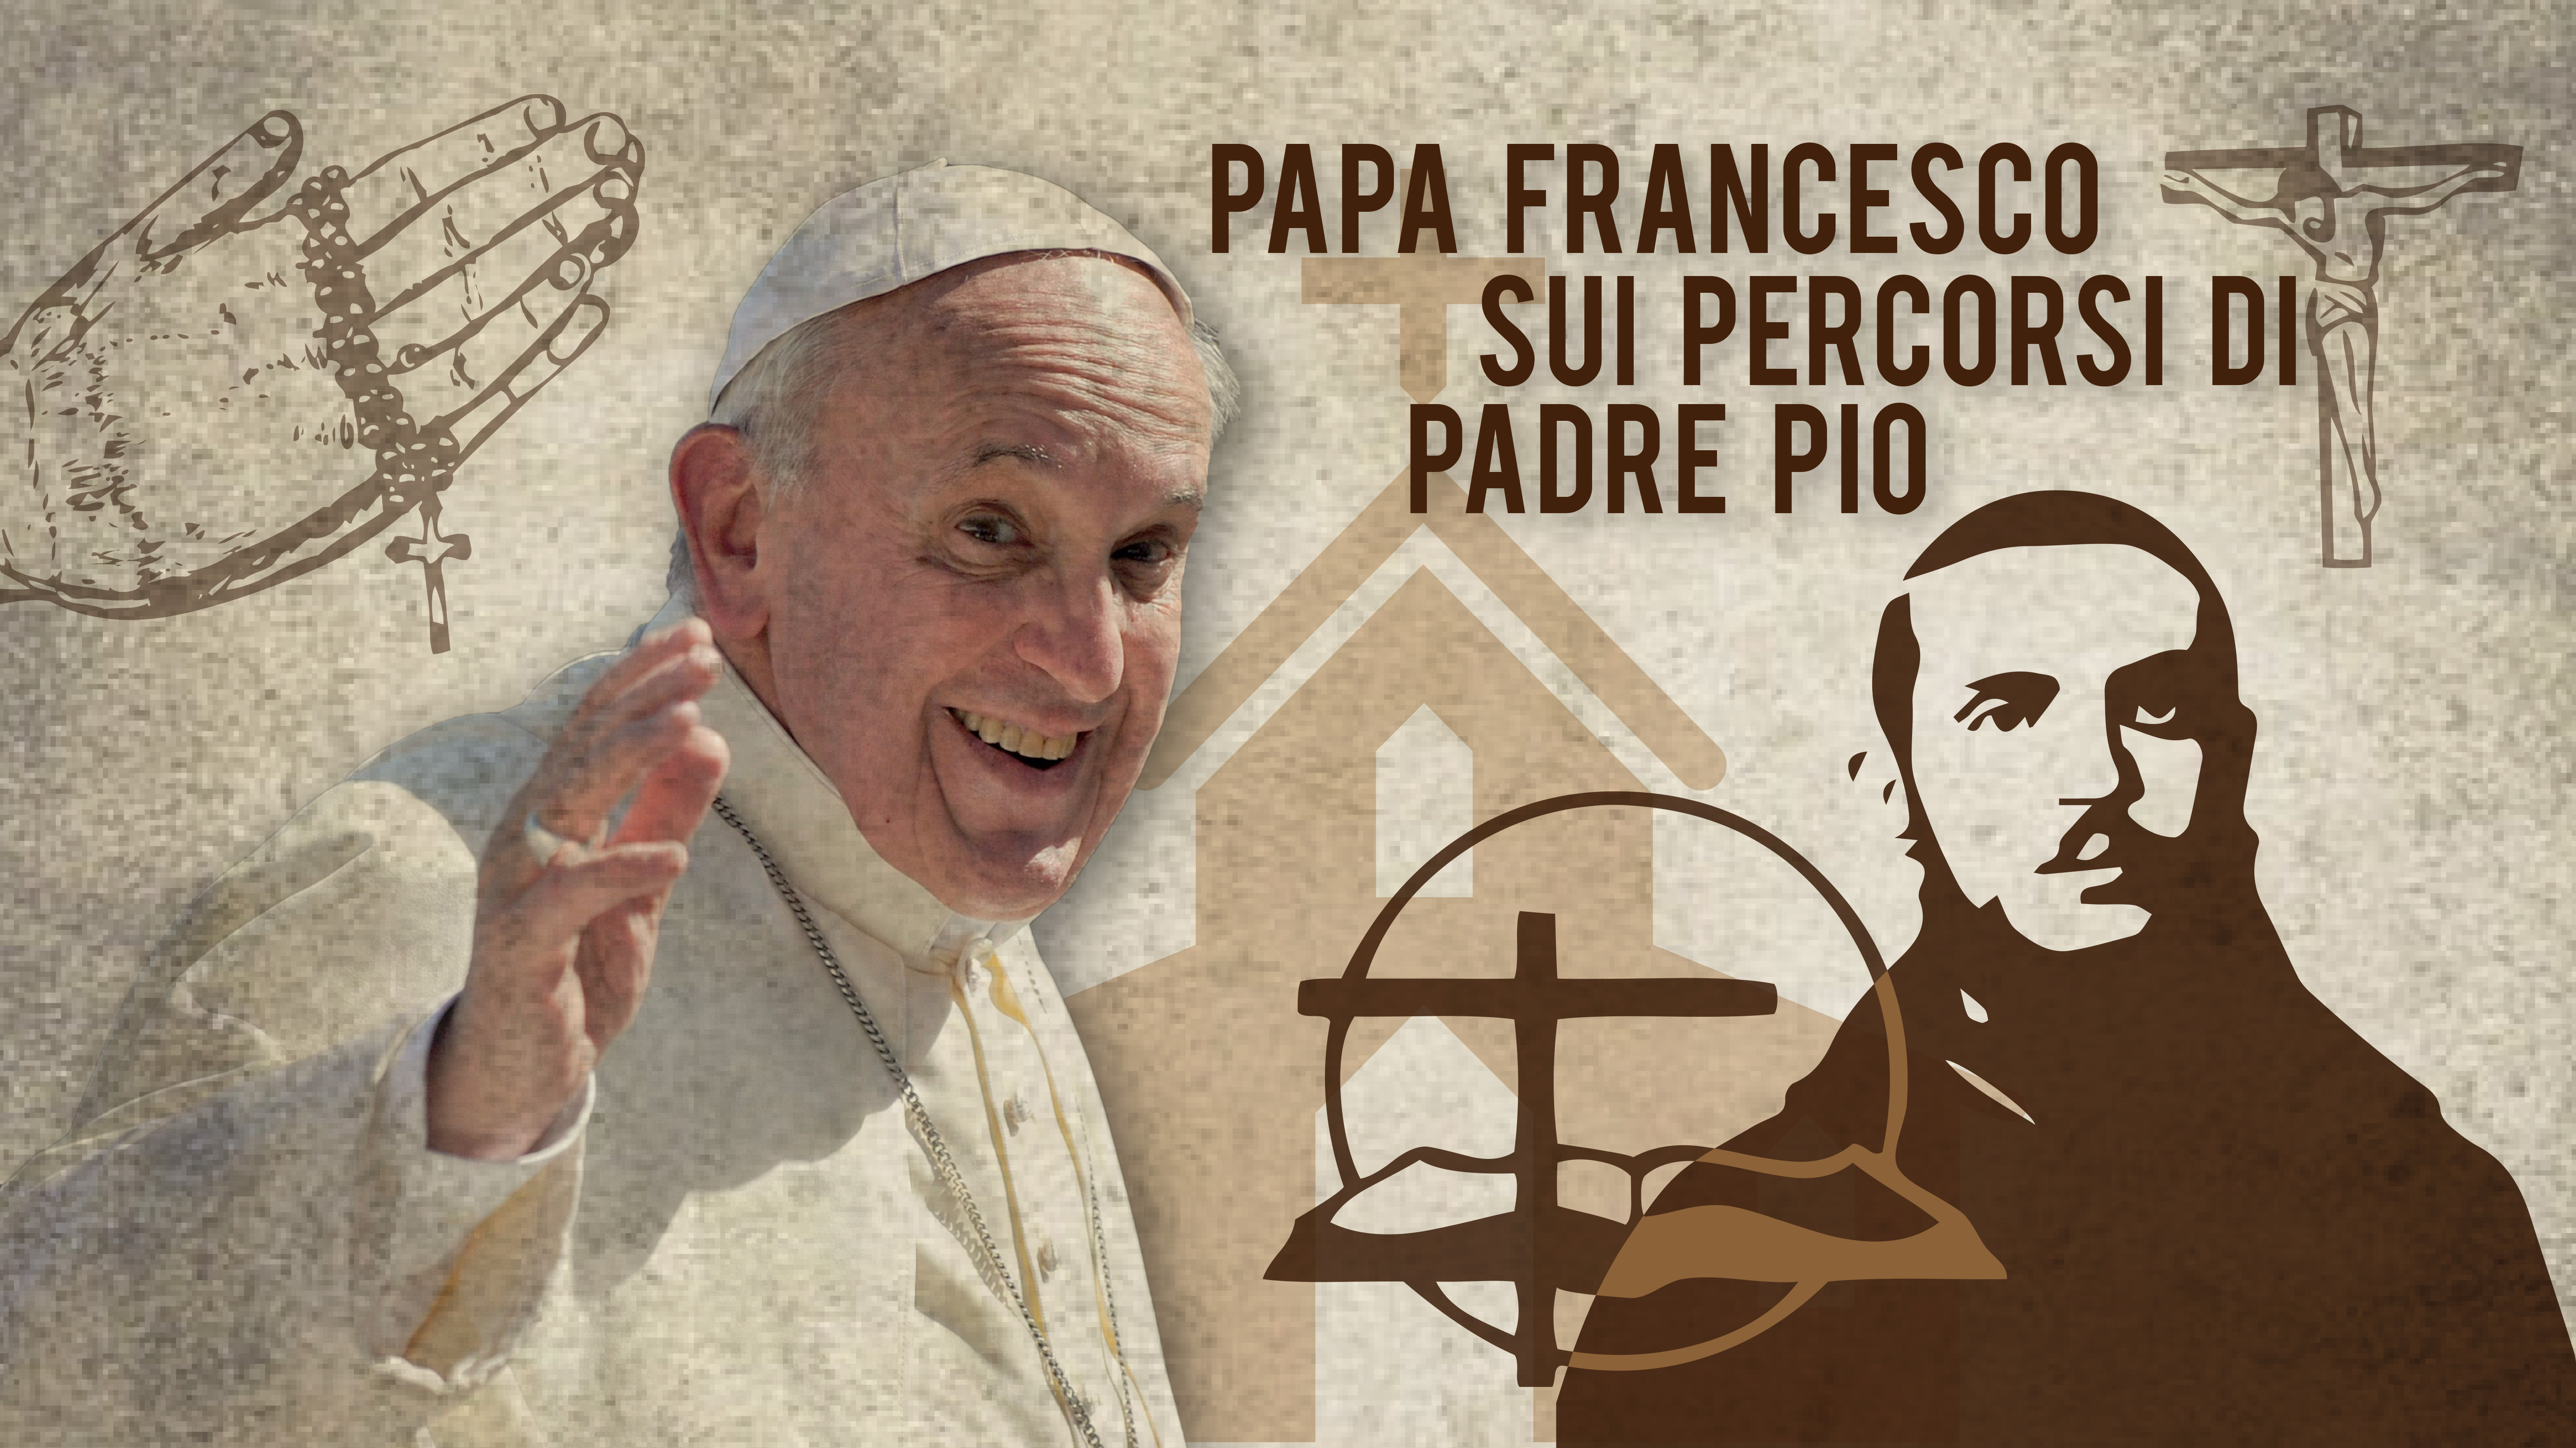 Papa Francesco ai fedeli: “Unite le forze per un futuro migliore. San Pio un tesoro prezioso da custodire”